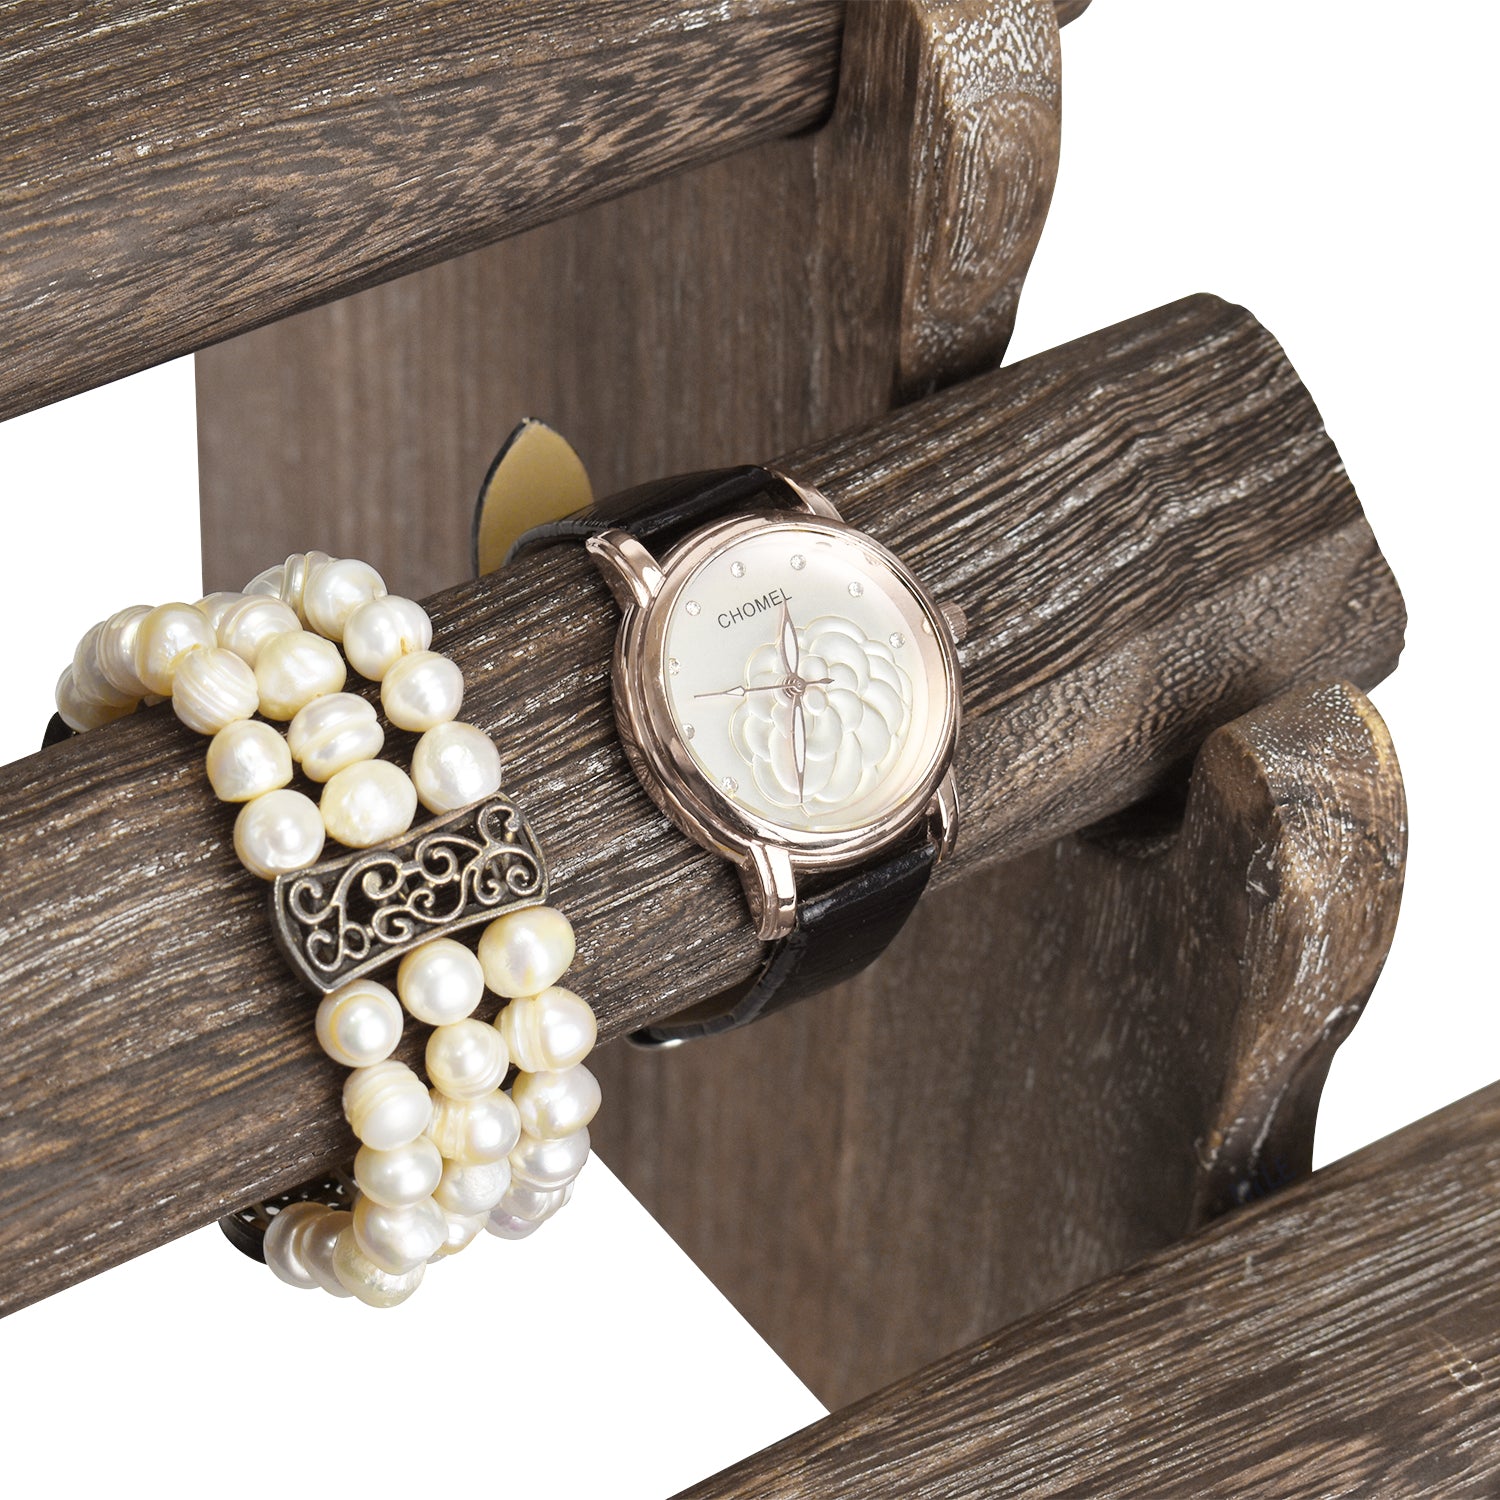 Ikee Design® Antique Wooden 4 Tier Bar Bracelet bangle holder Display